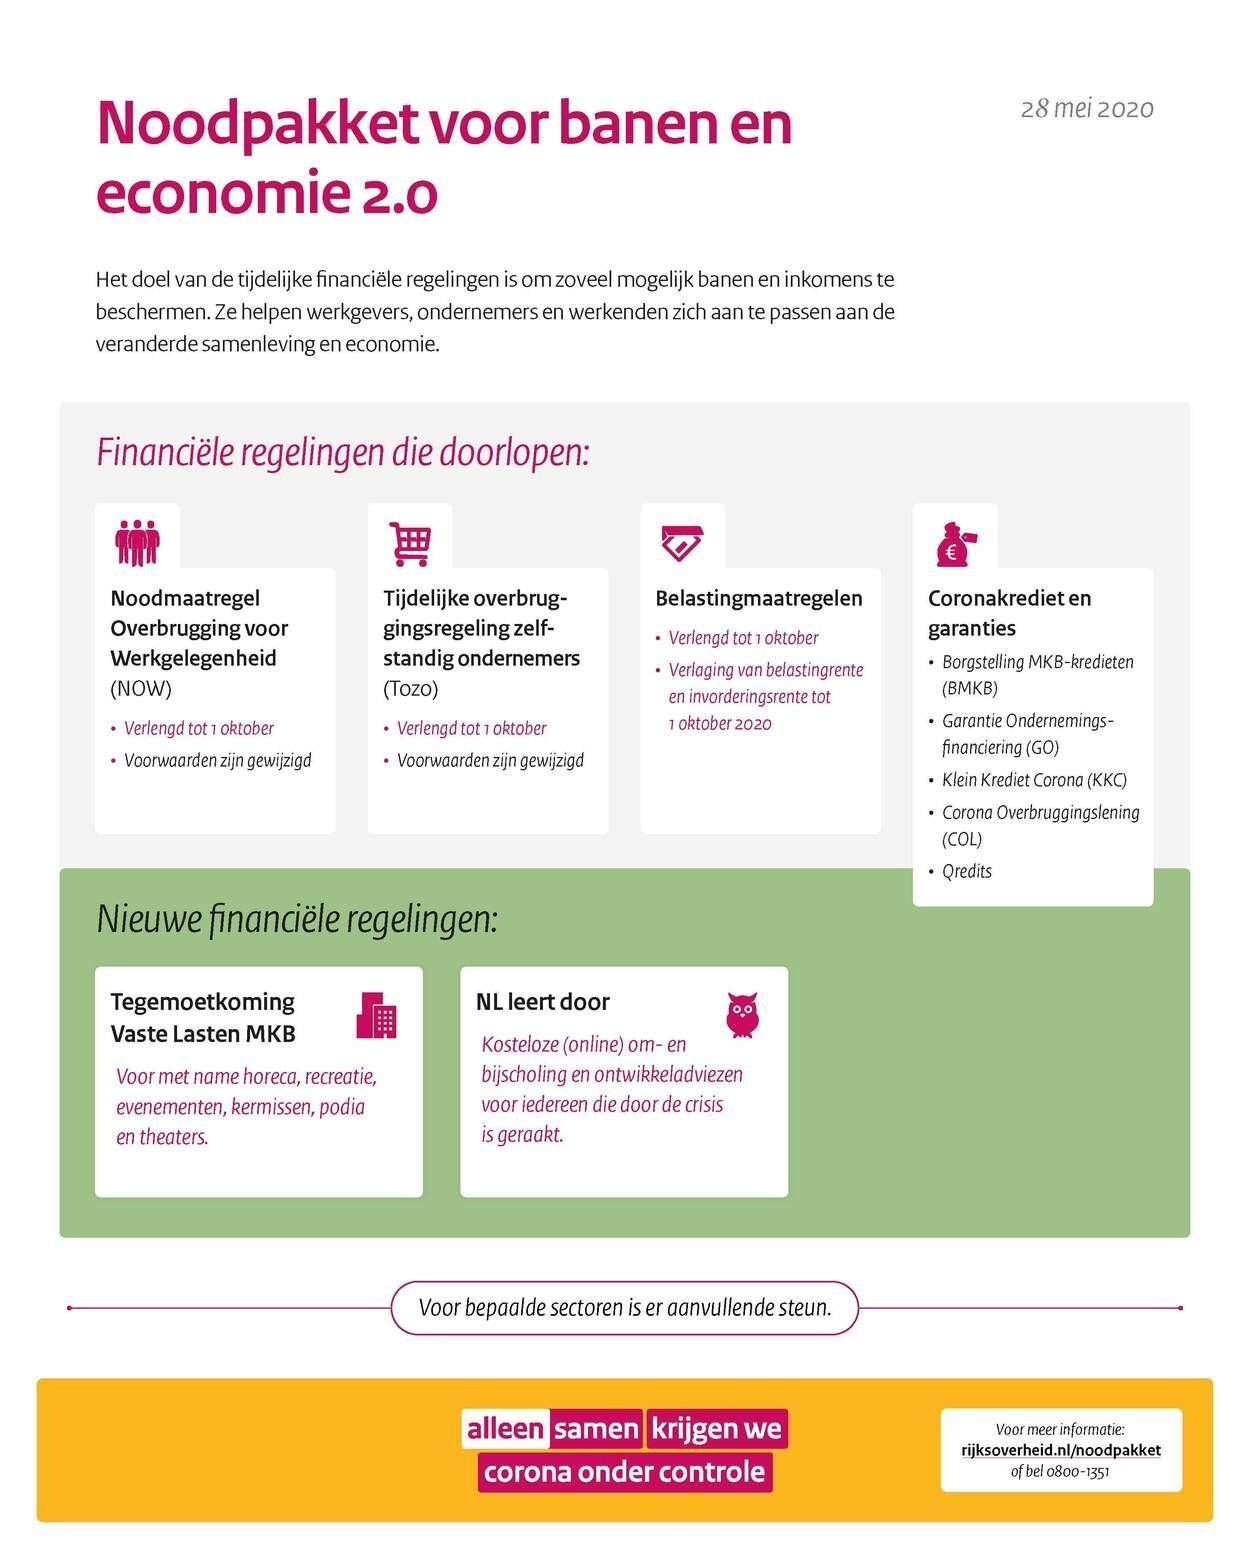 Factsheet van Rijksoverheid over Noodpakket voor banen en economie 2.0